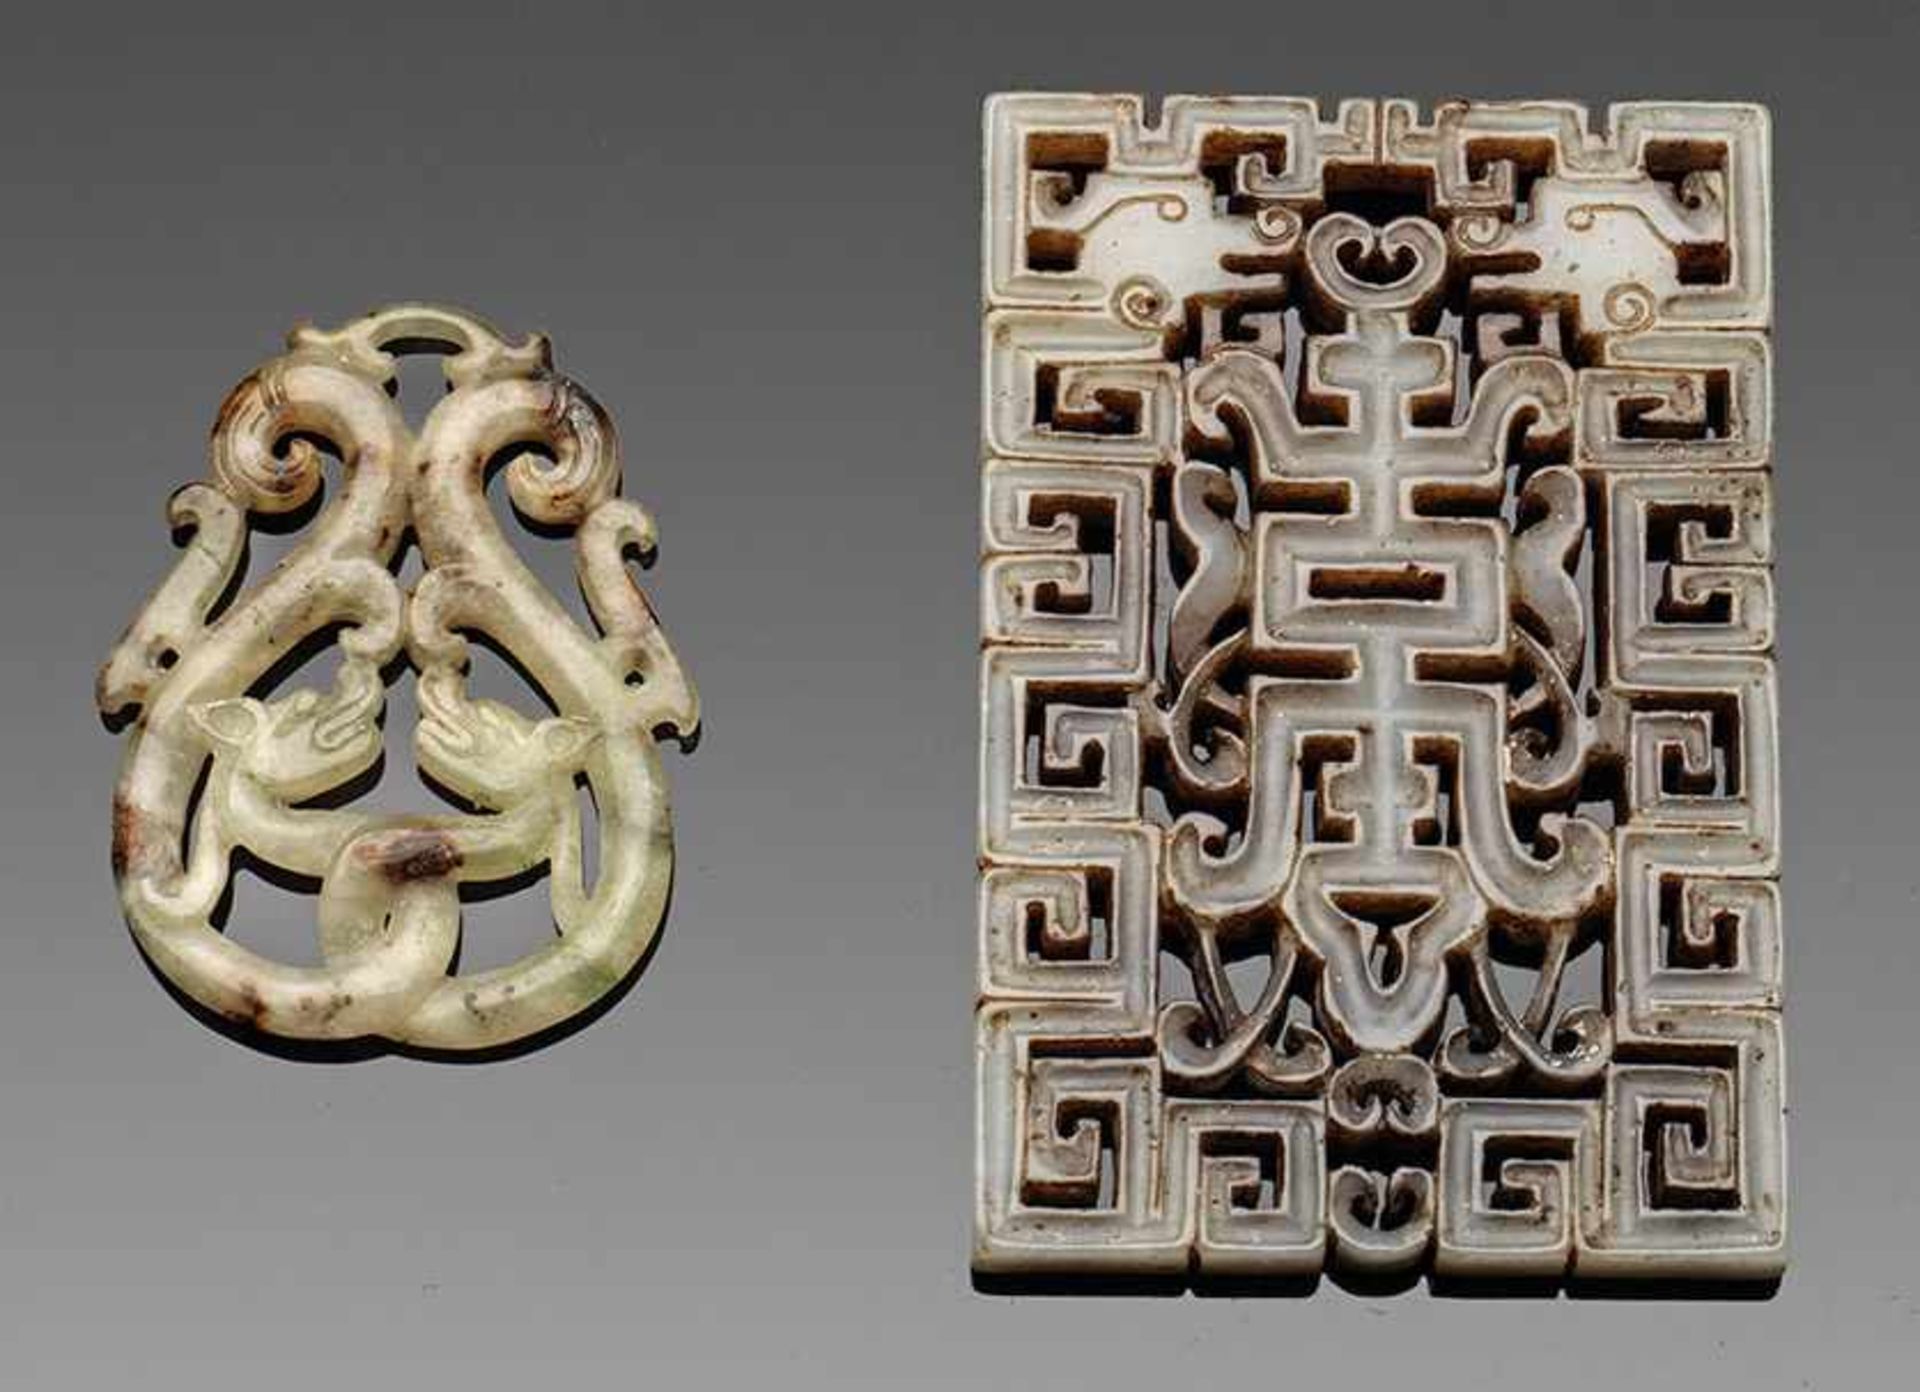 Anhänger und Plakette im archaischen StilGrauweiße und helle, seladongrüne Jade mit rost- bis